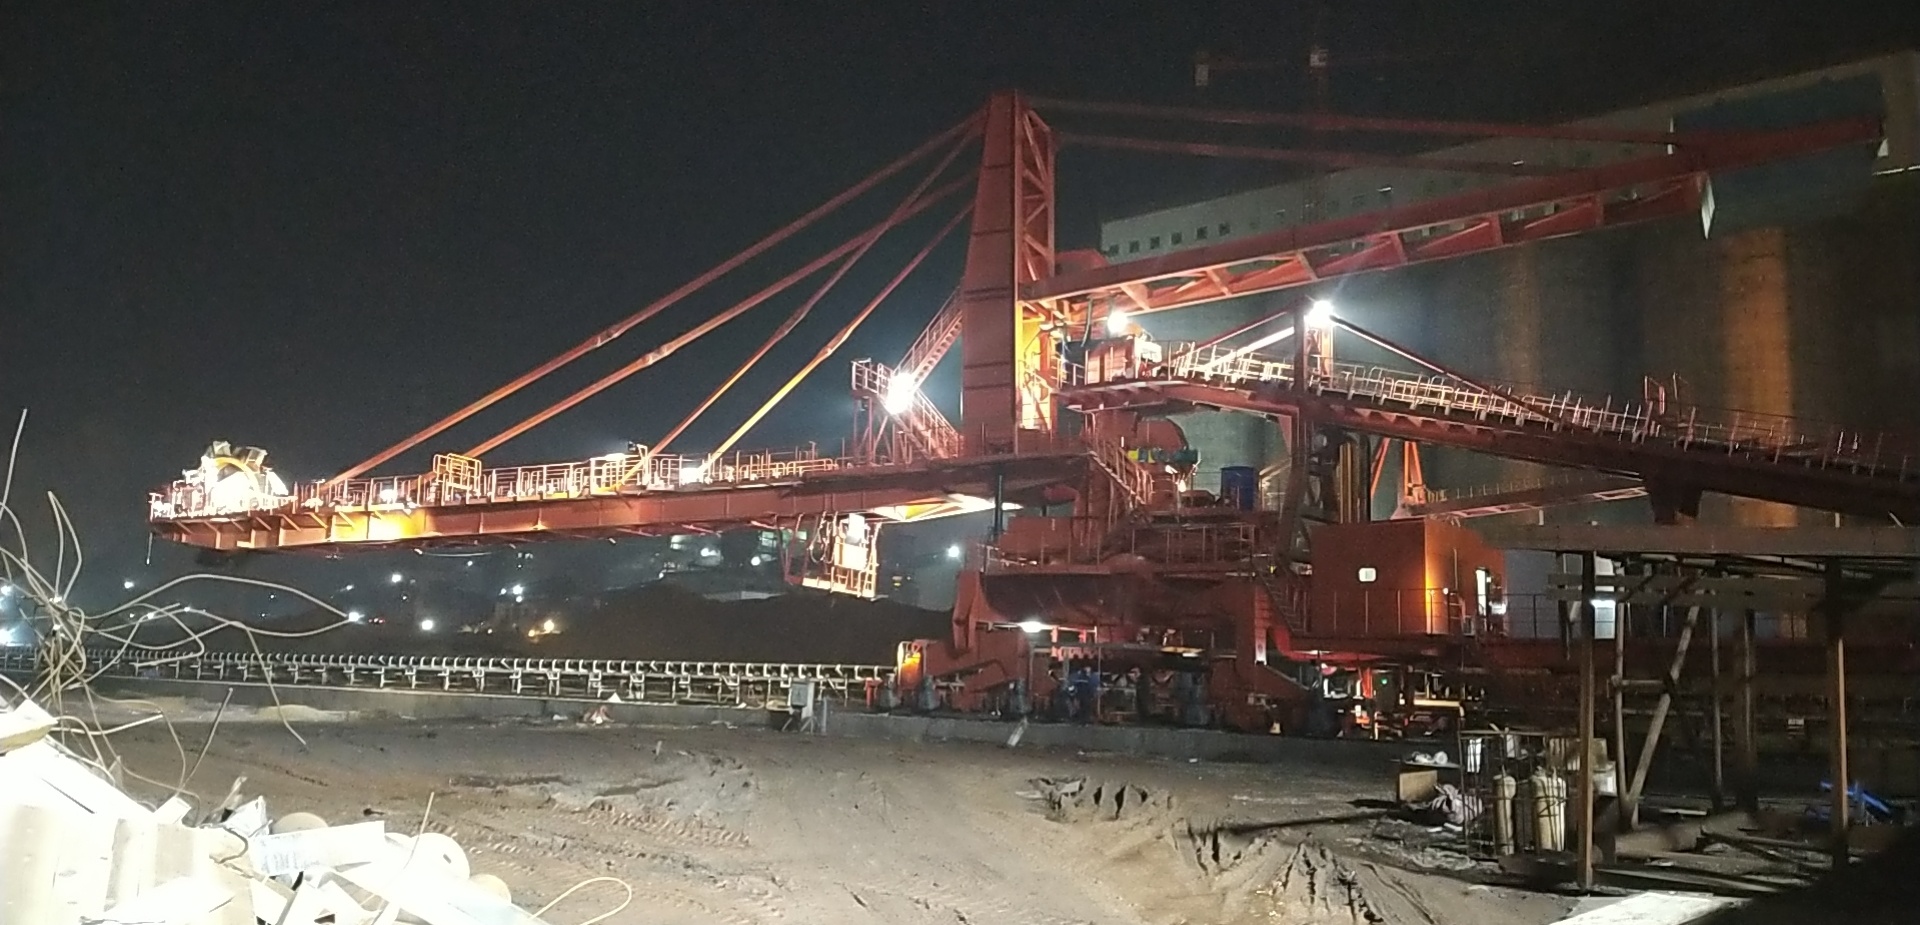 重慶鋼鐵股份有限公司兩臺斗輪堆取料機進入調試階段